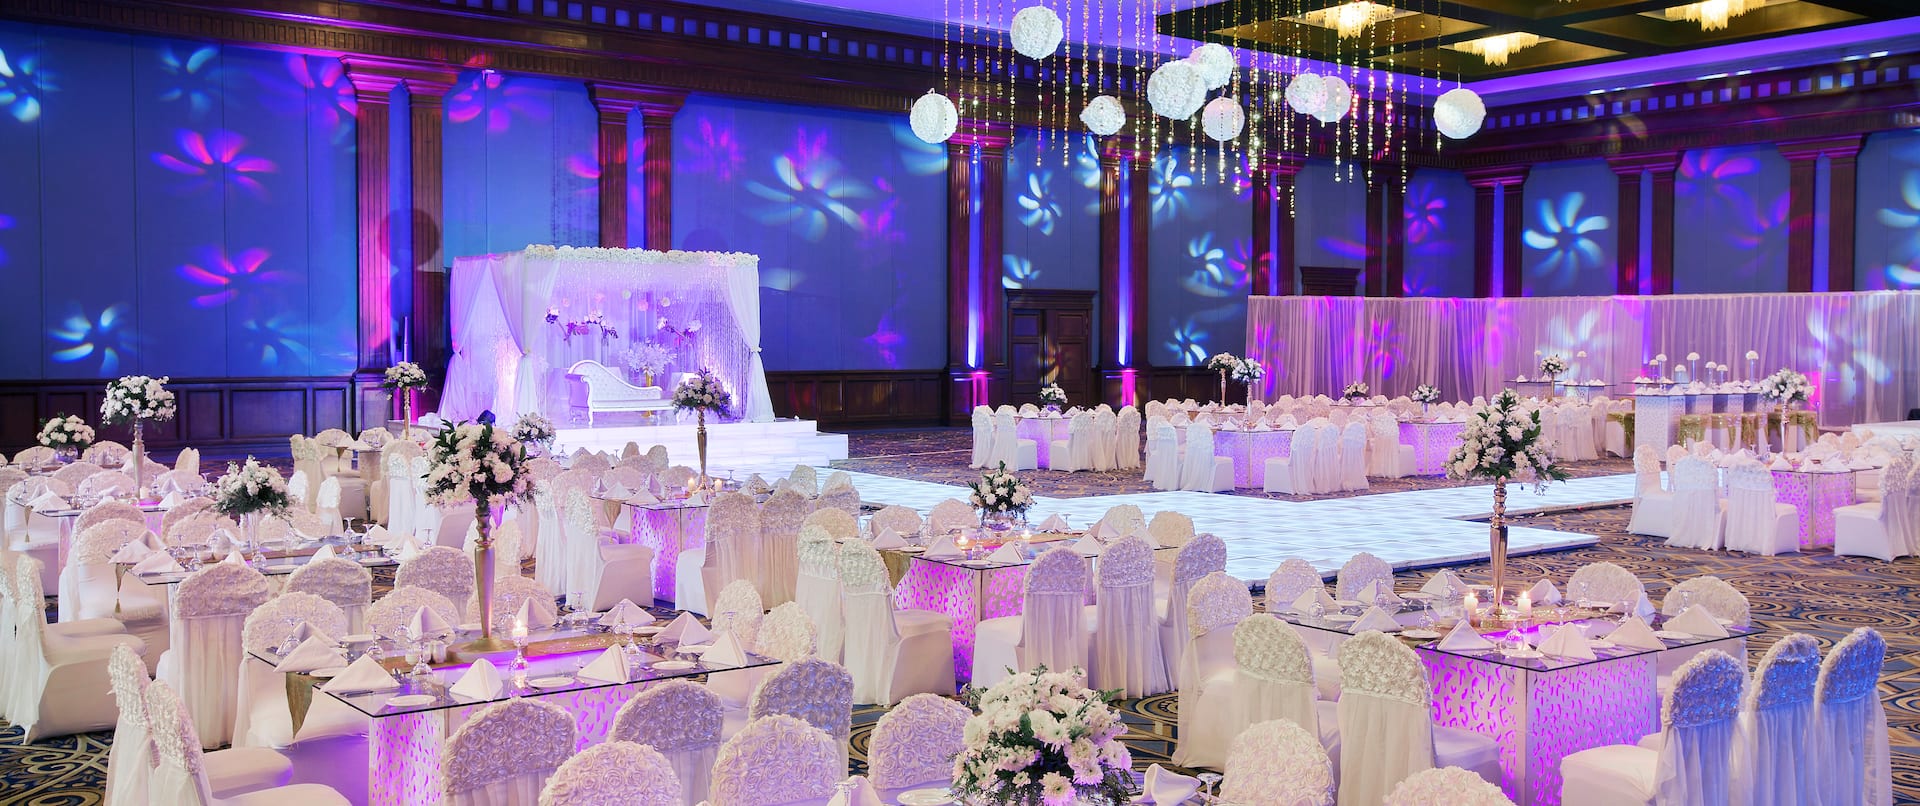 Al Zahraa Ballroom Wedding   